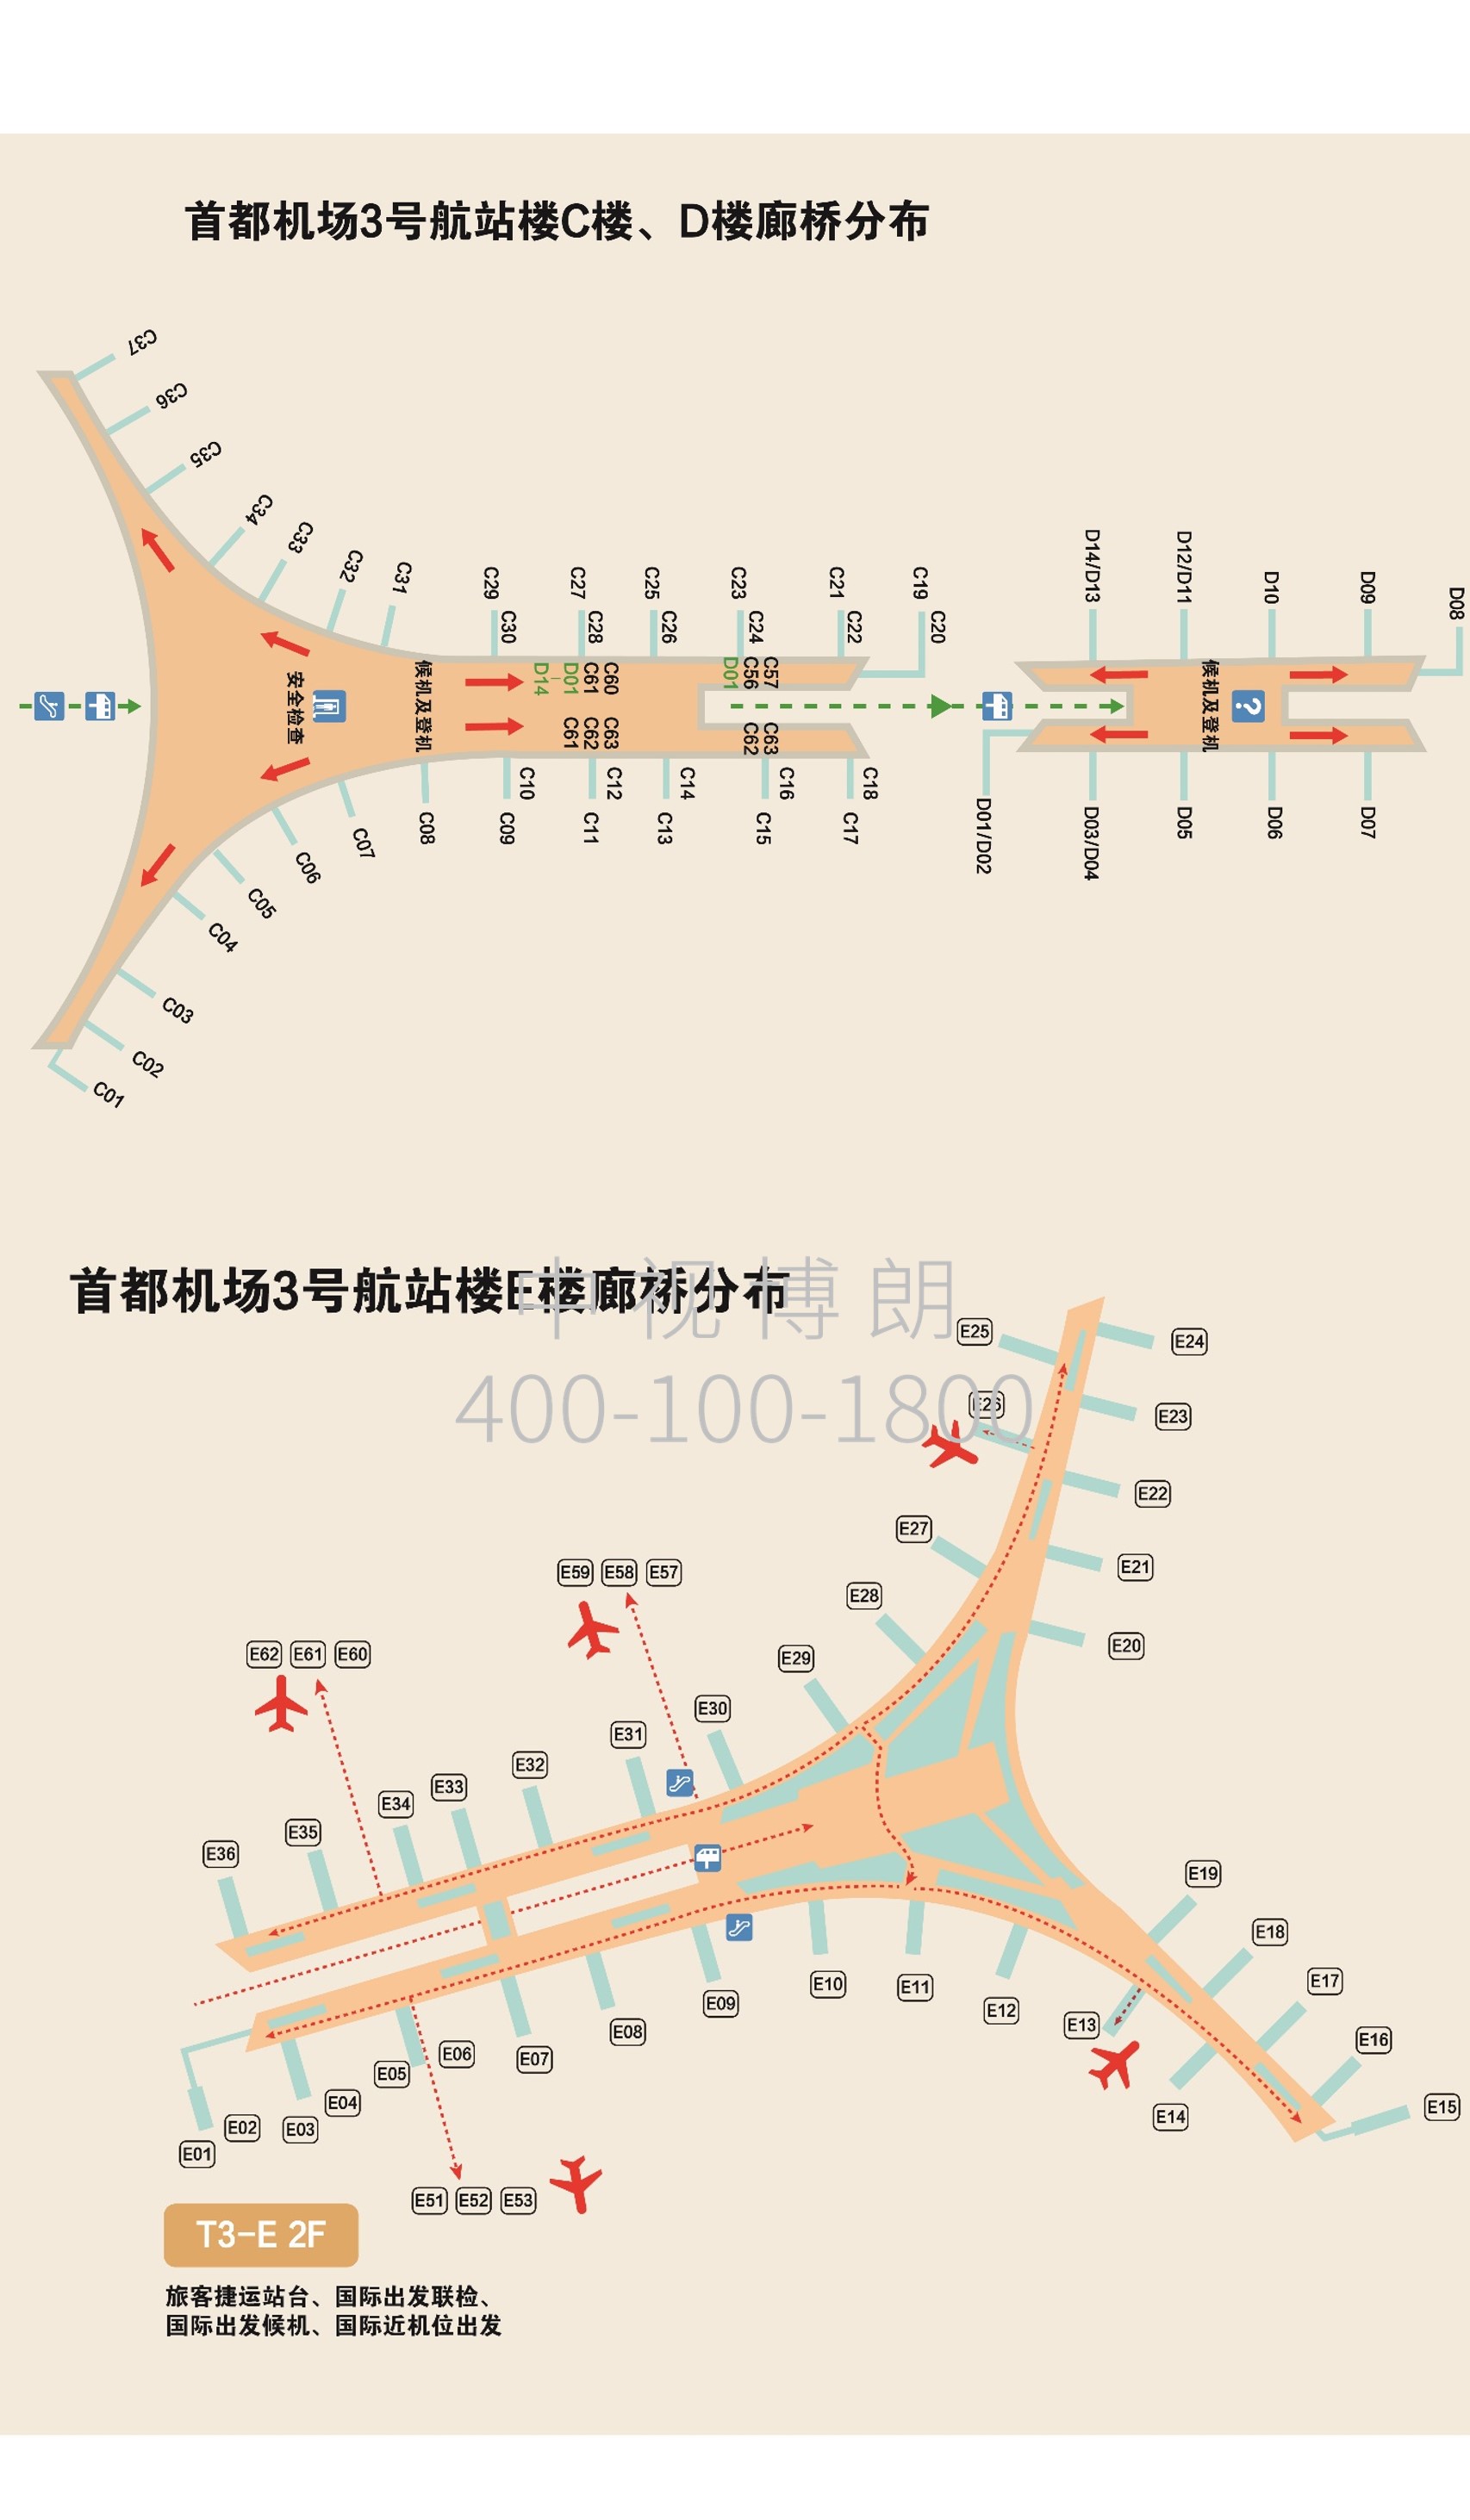 北京首都机场广告-T3 Outer Corridor Bridge Single Penetration Adhesive Set 1-2位置图